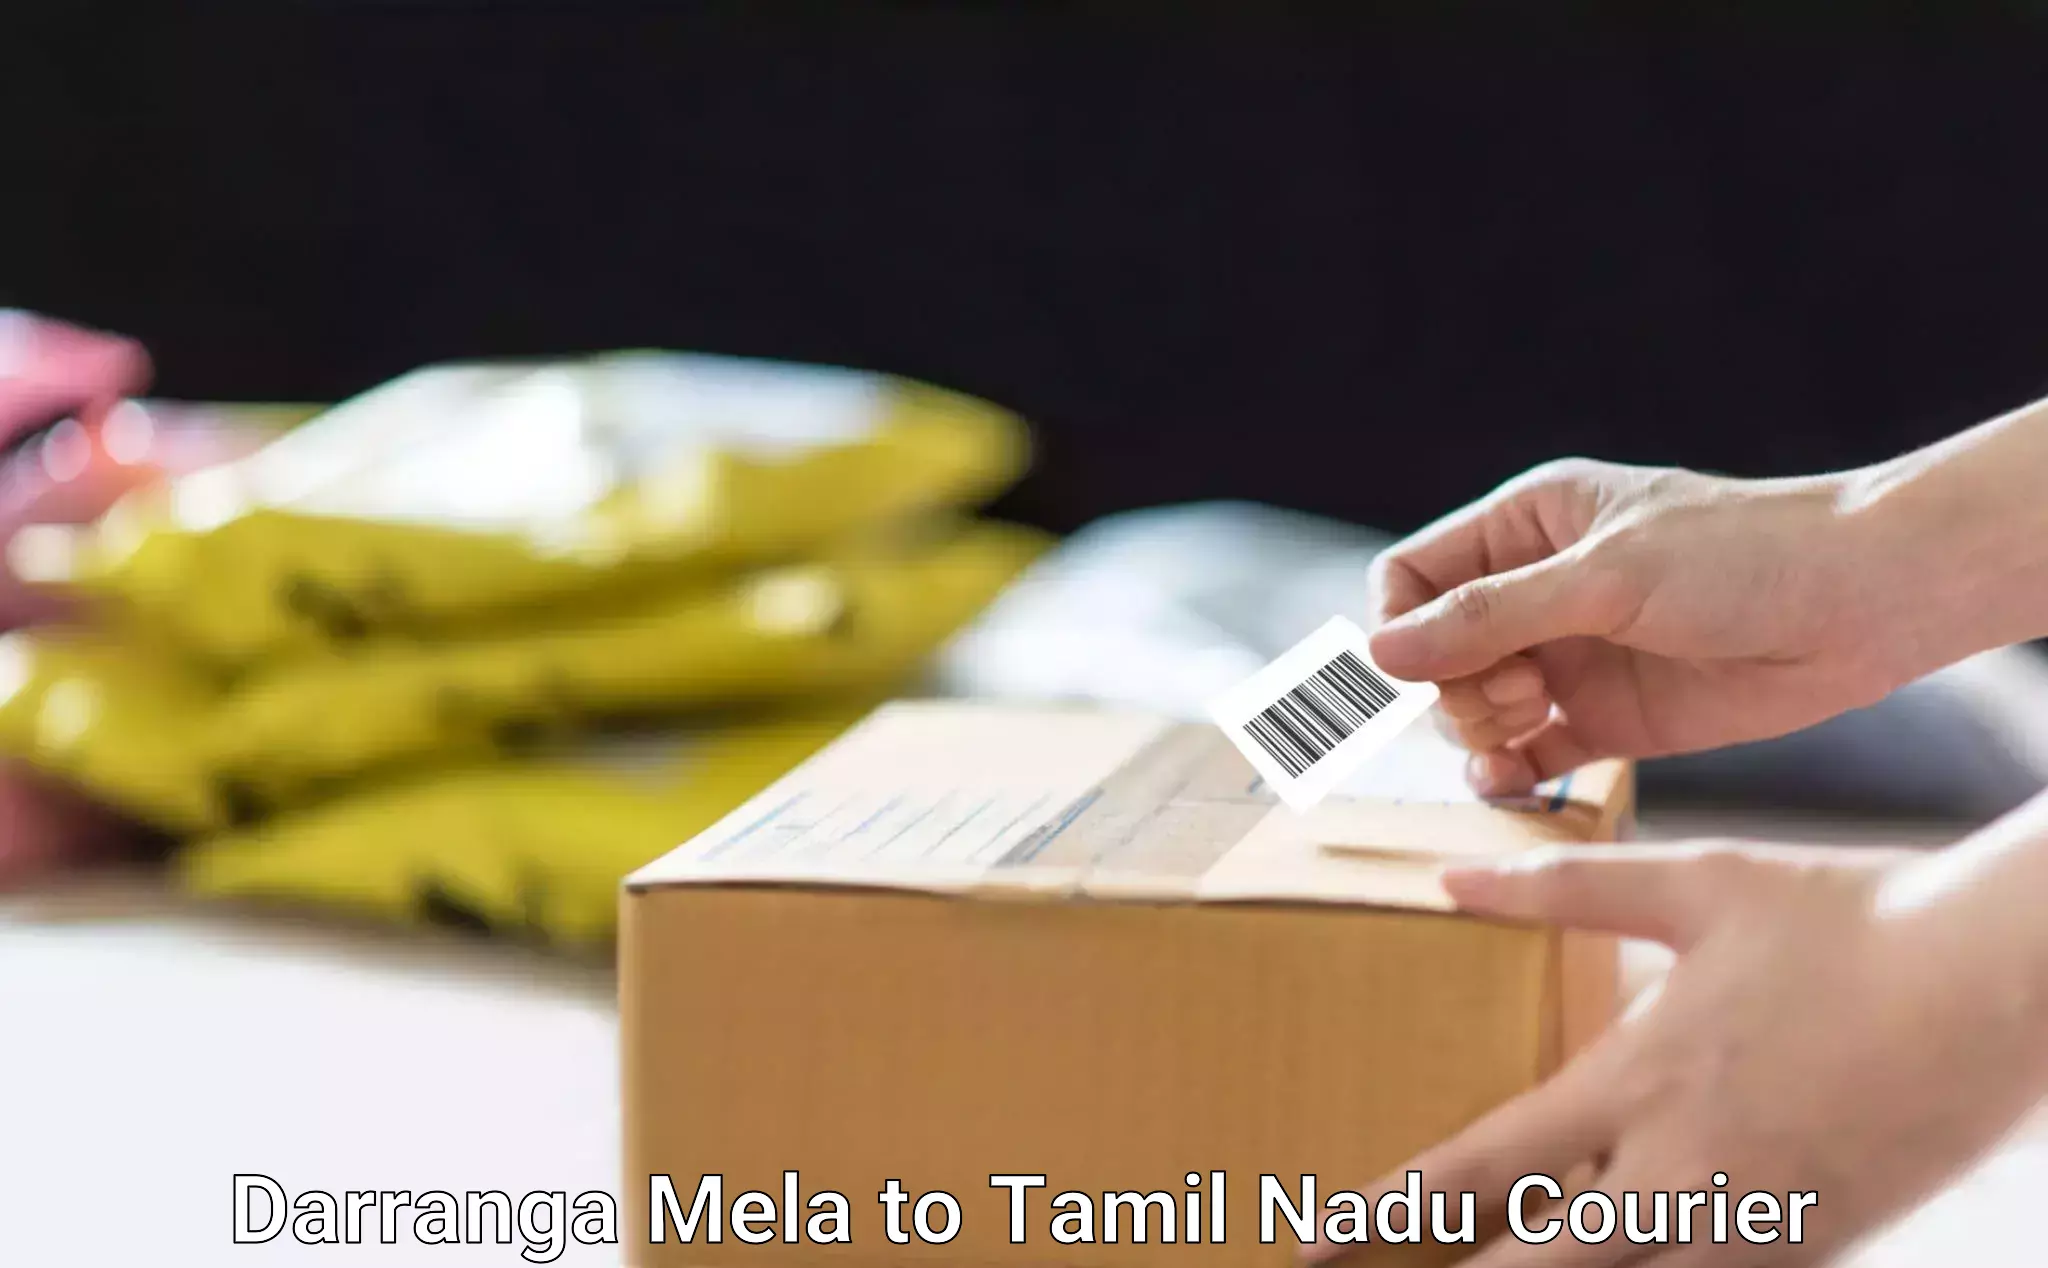 Sustainable delivery practices Darranga Mela to Tirukalukundram